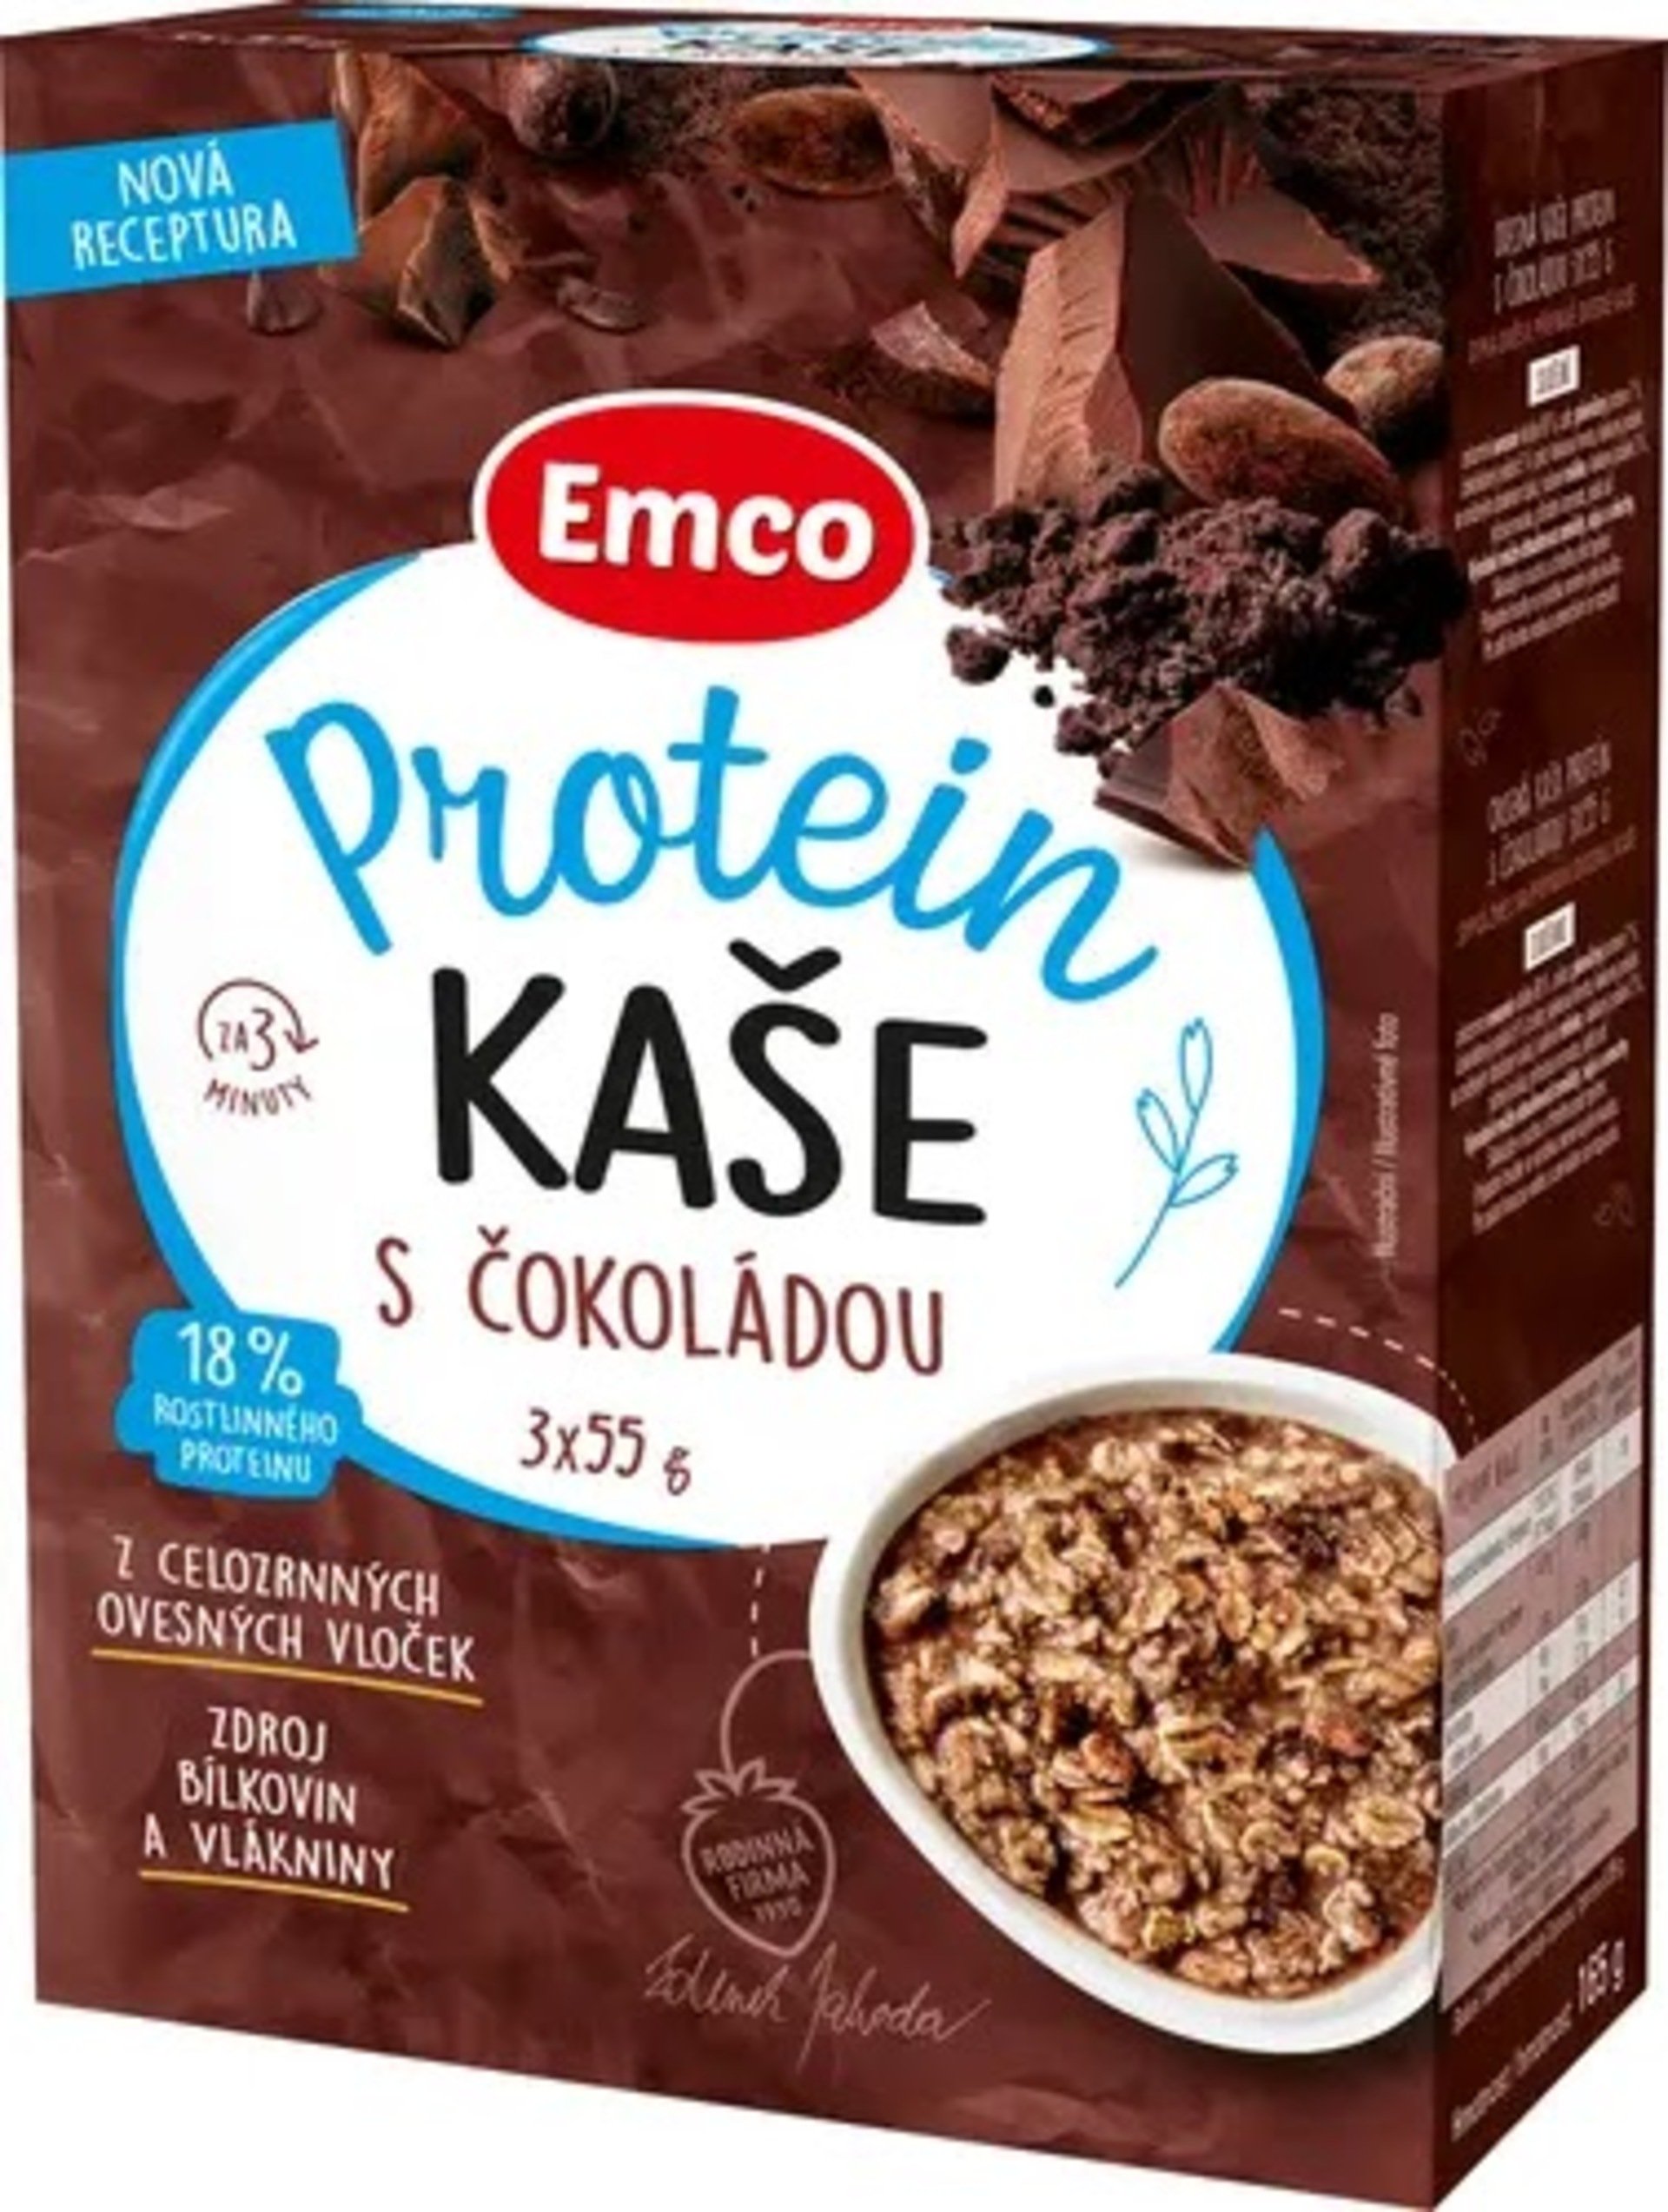 Emco kaše proteinová s čokoládou 3x55 g